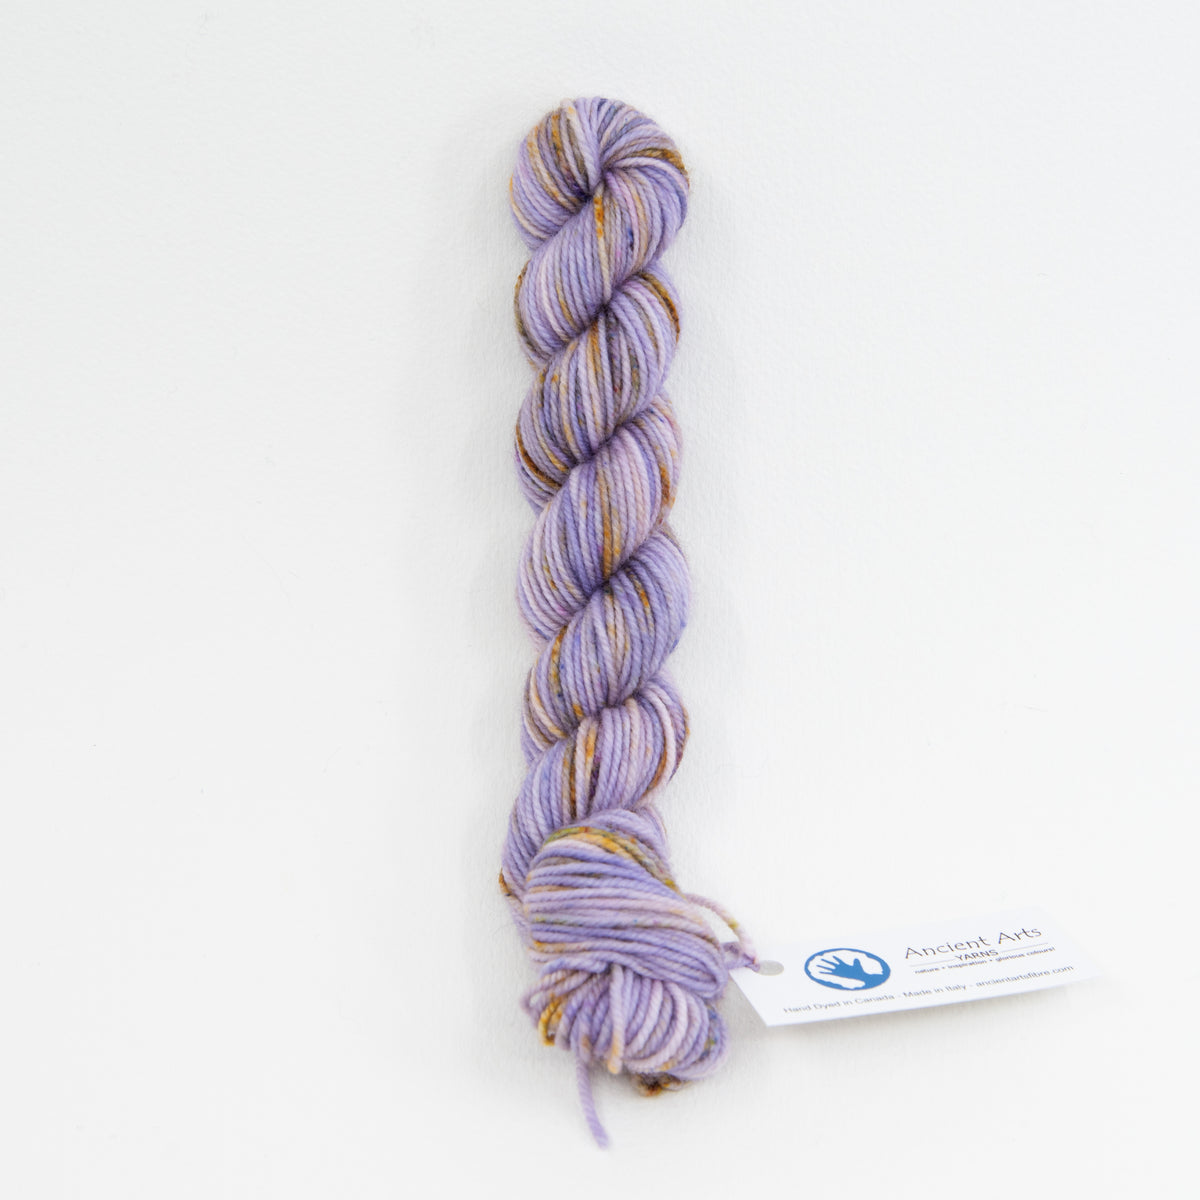 Lavender Fields Forever - Socknado Mini Twister 20 Gram - Dyed Stock